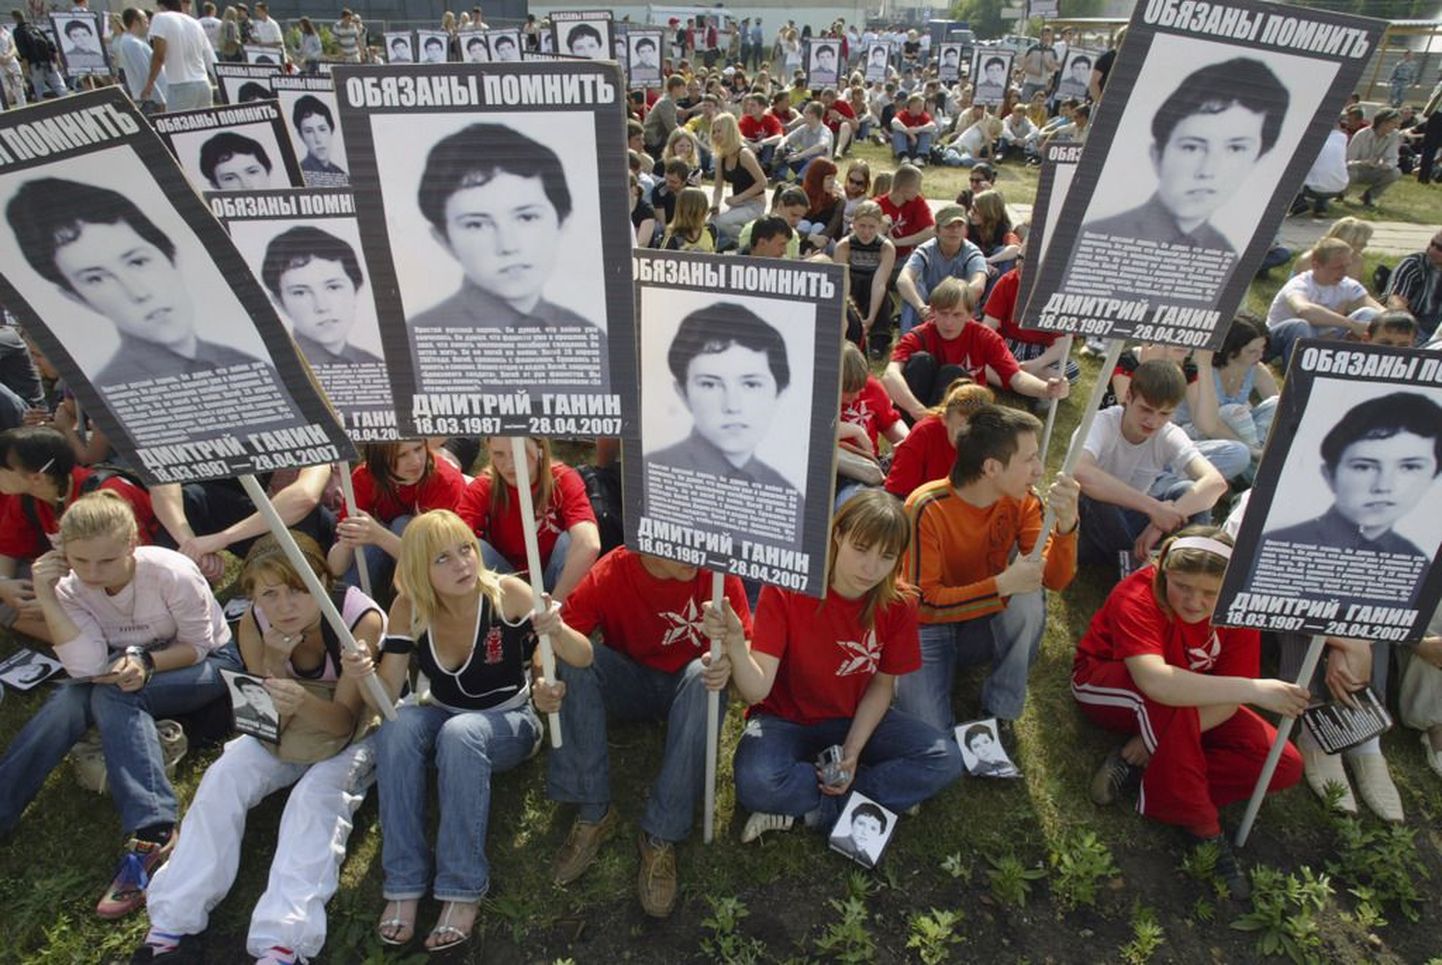 Našistid pronksööl hukkunud Dmitri Ganini pildiga plakatitega Moskvas 2008. aastal.